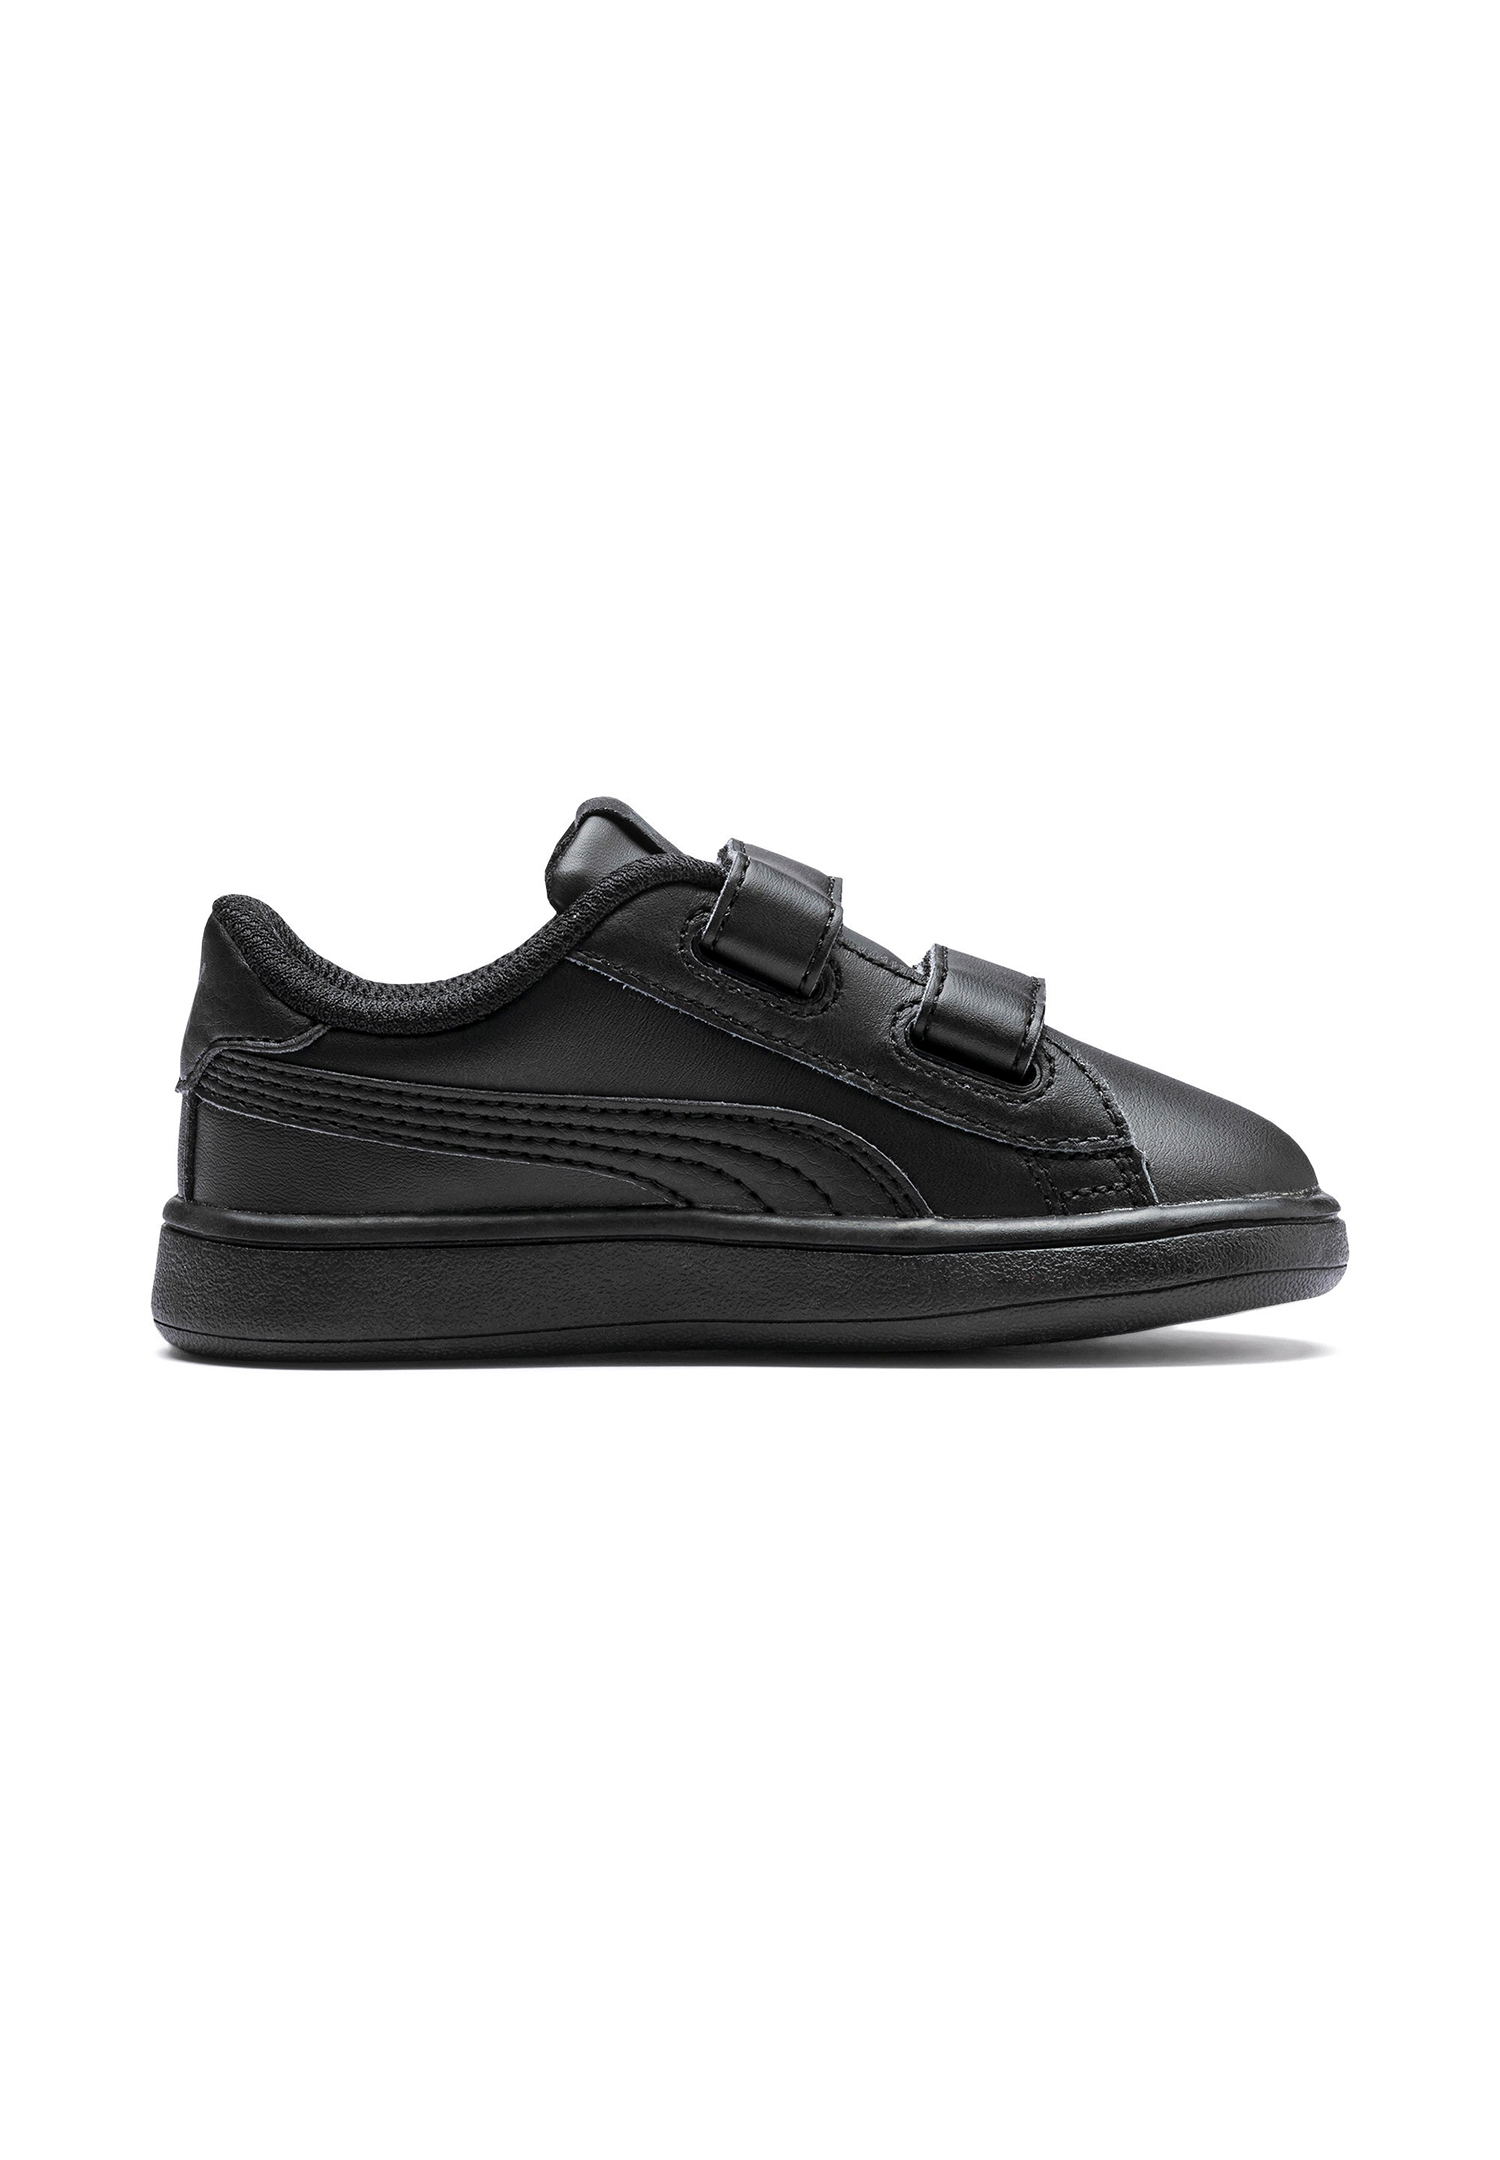 PUMA Smash v2 L V INF Kids Sneaker Schuhe schwarz 365174 01